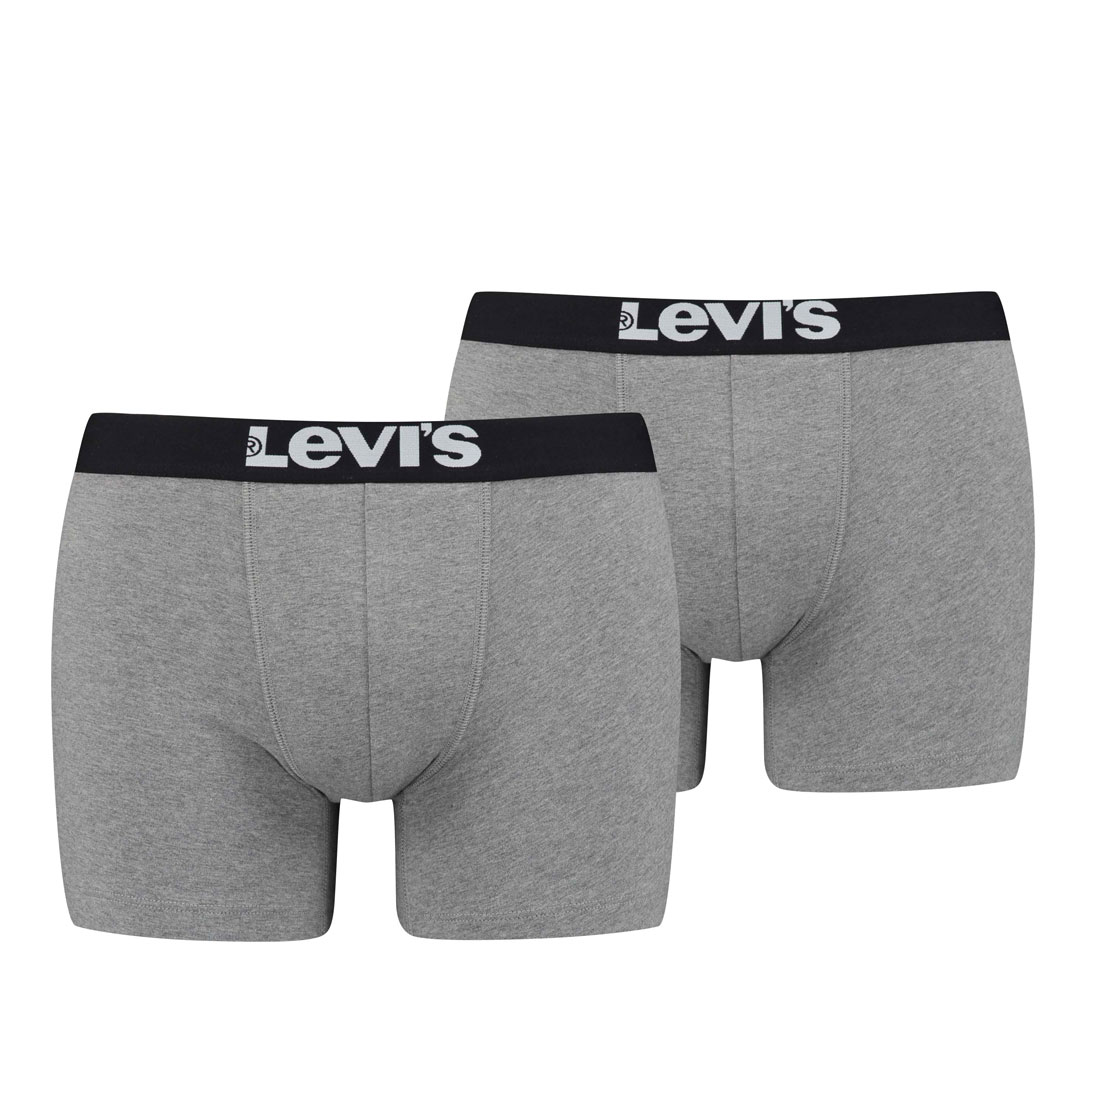 Levi's Herren Levis Men SOLID Basic Boxer 2P Boxershorts, Grau (Middle Grey Melange 758), Small (Herstellergröße: 010) (2er Pack)